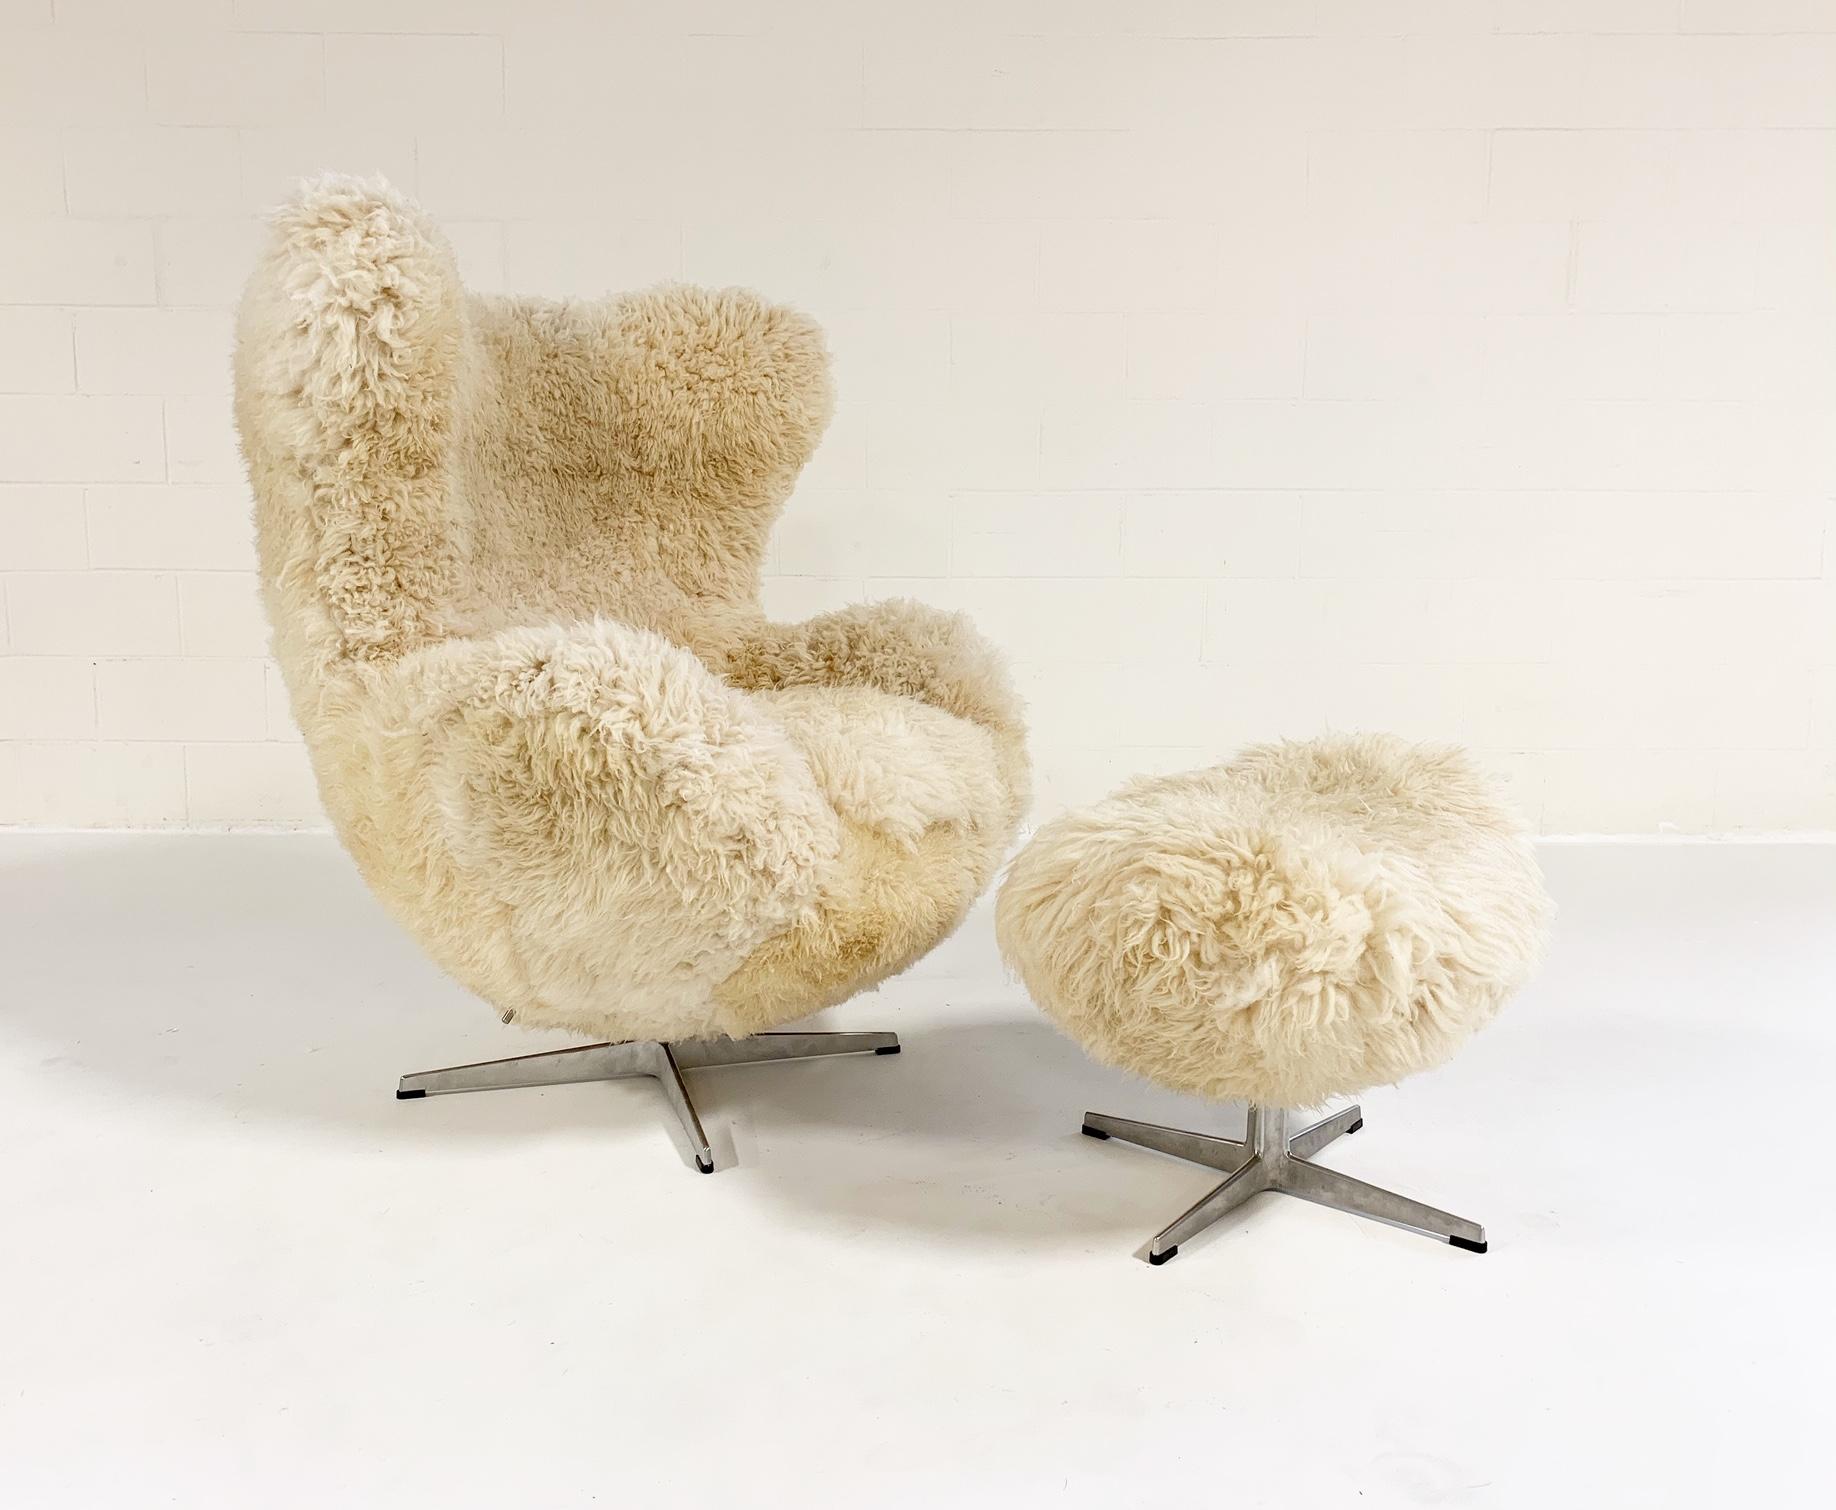 Nous disposons d'une incroyable collection de chaises vintage et d'icônes du design qui attendent une nouvelle vie. Nos authentiques chaises à œuf usagées font partie de nos modèles les plus populaires. 

Ce fauteuil et cet ottoman seront